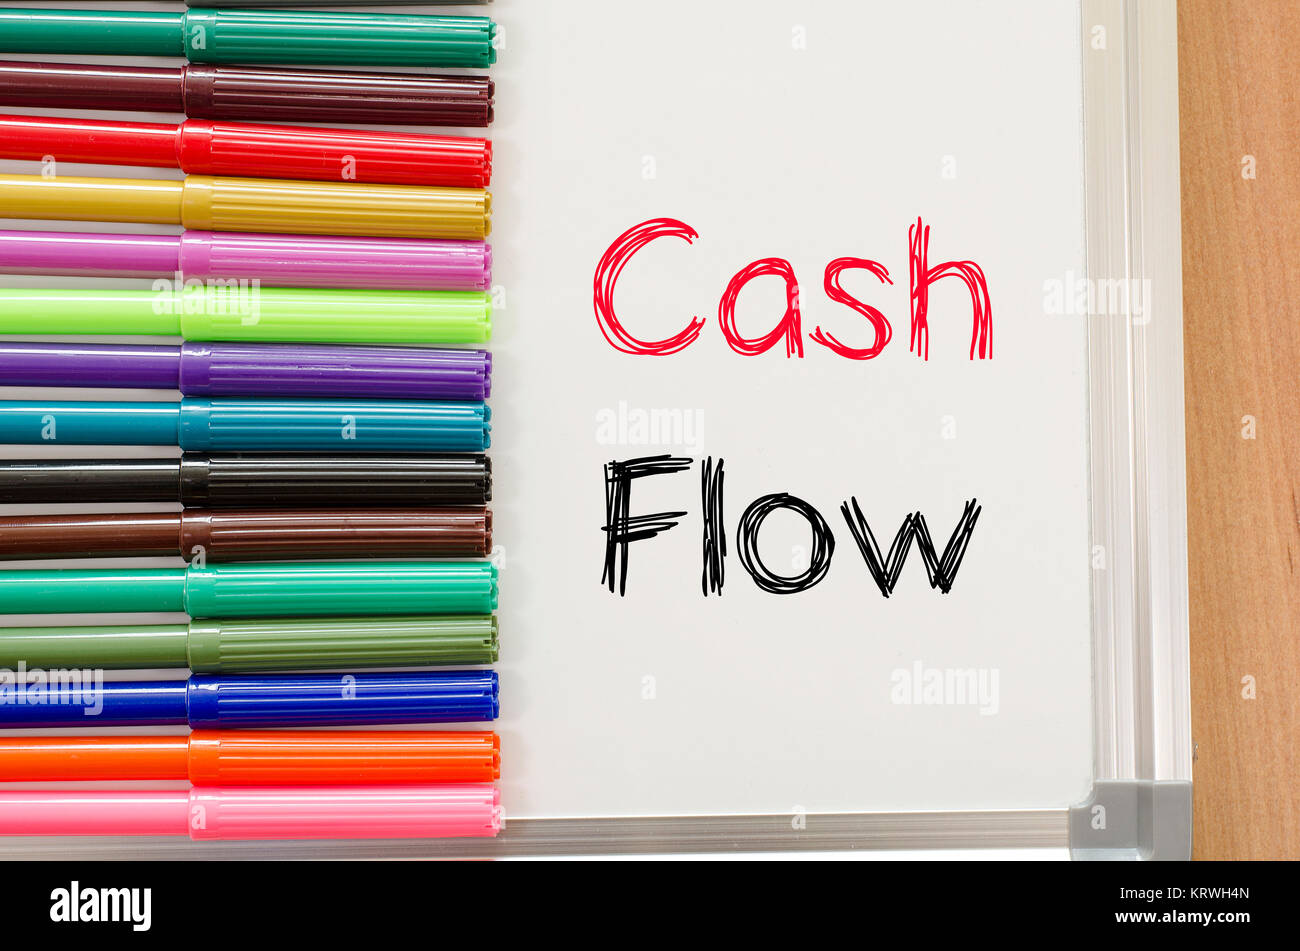 Cash flow text concept Stock Photo